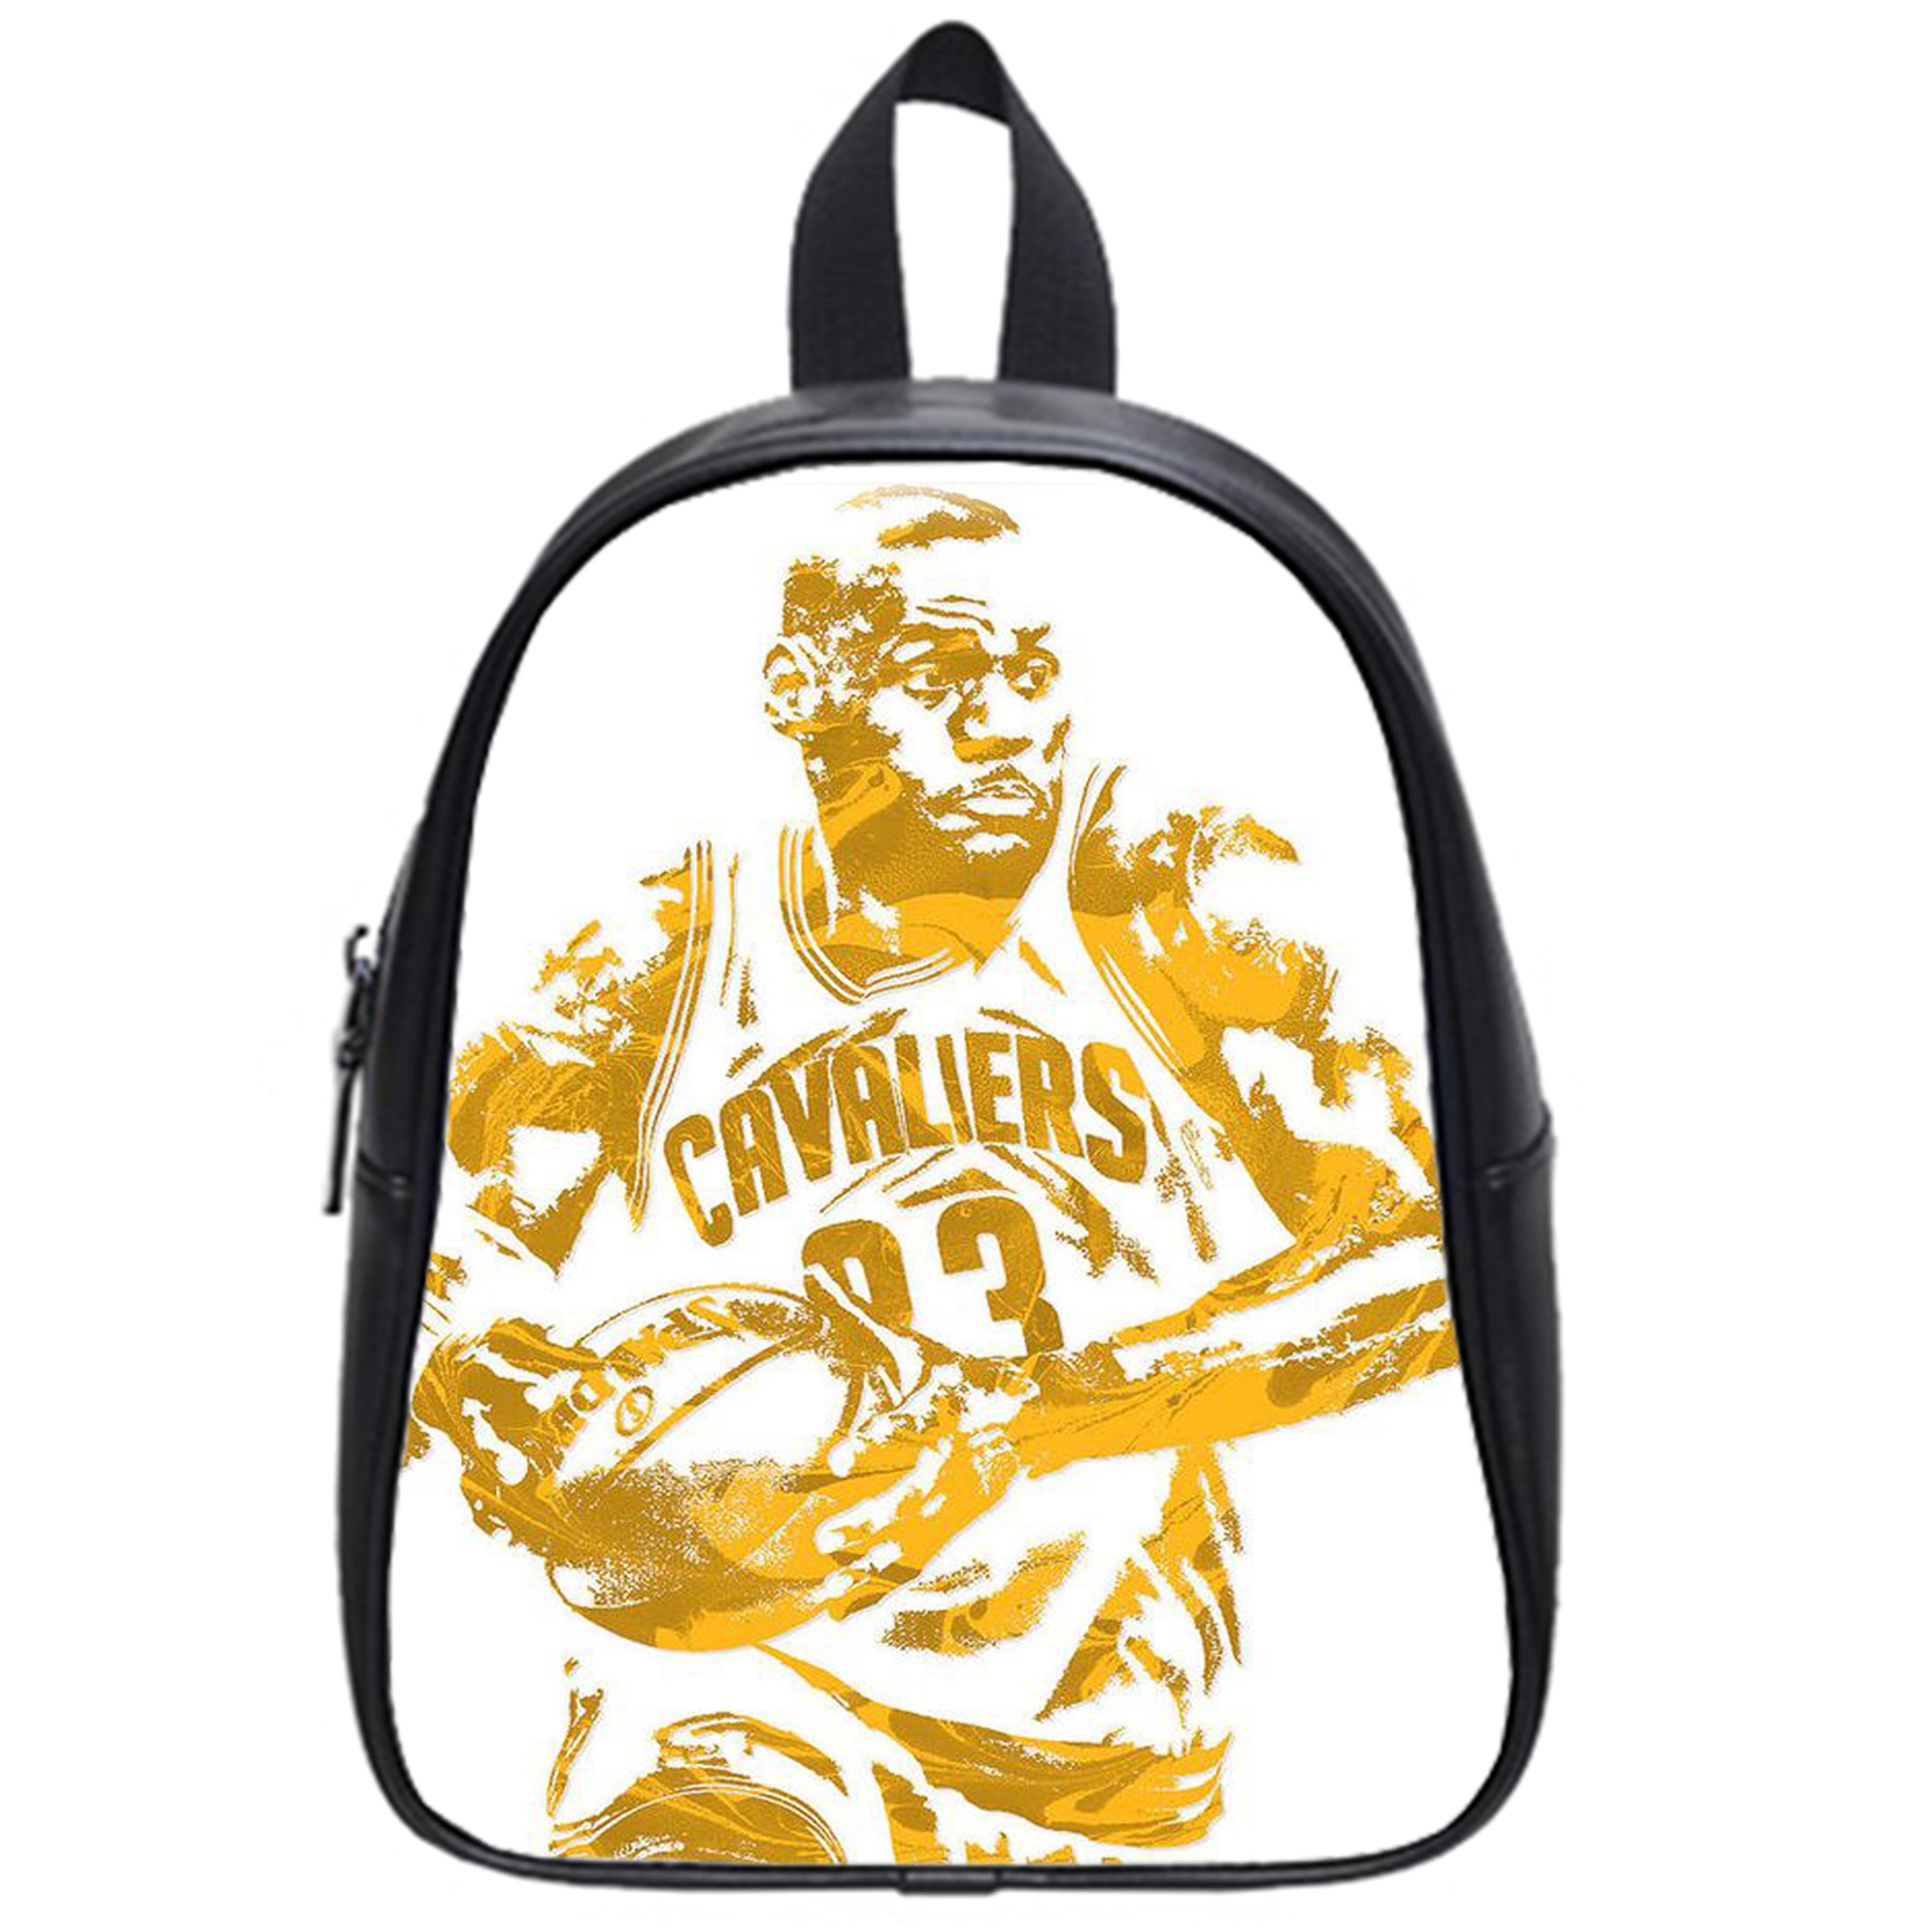 lebron james backpack for kids